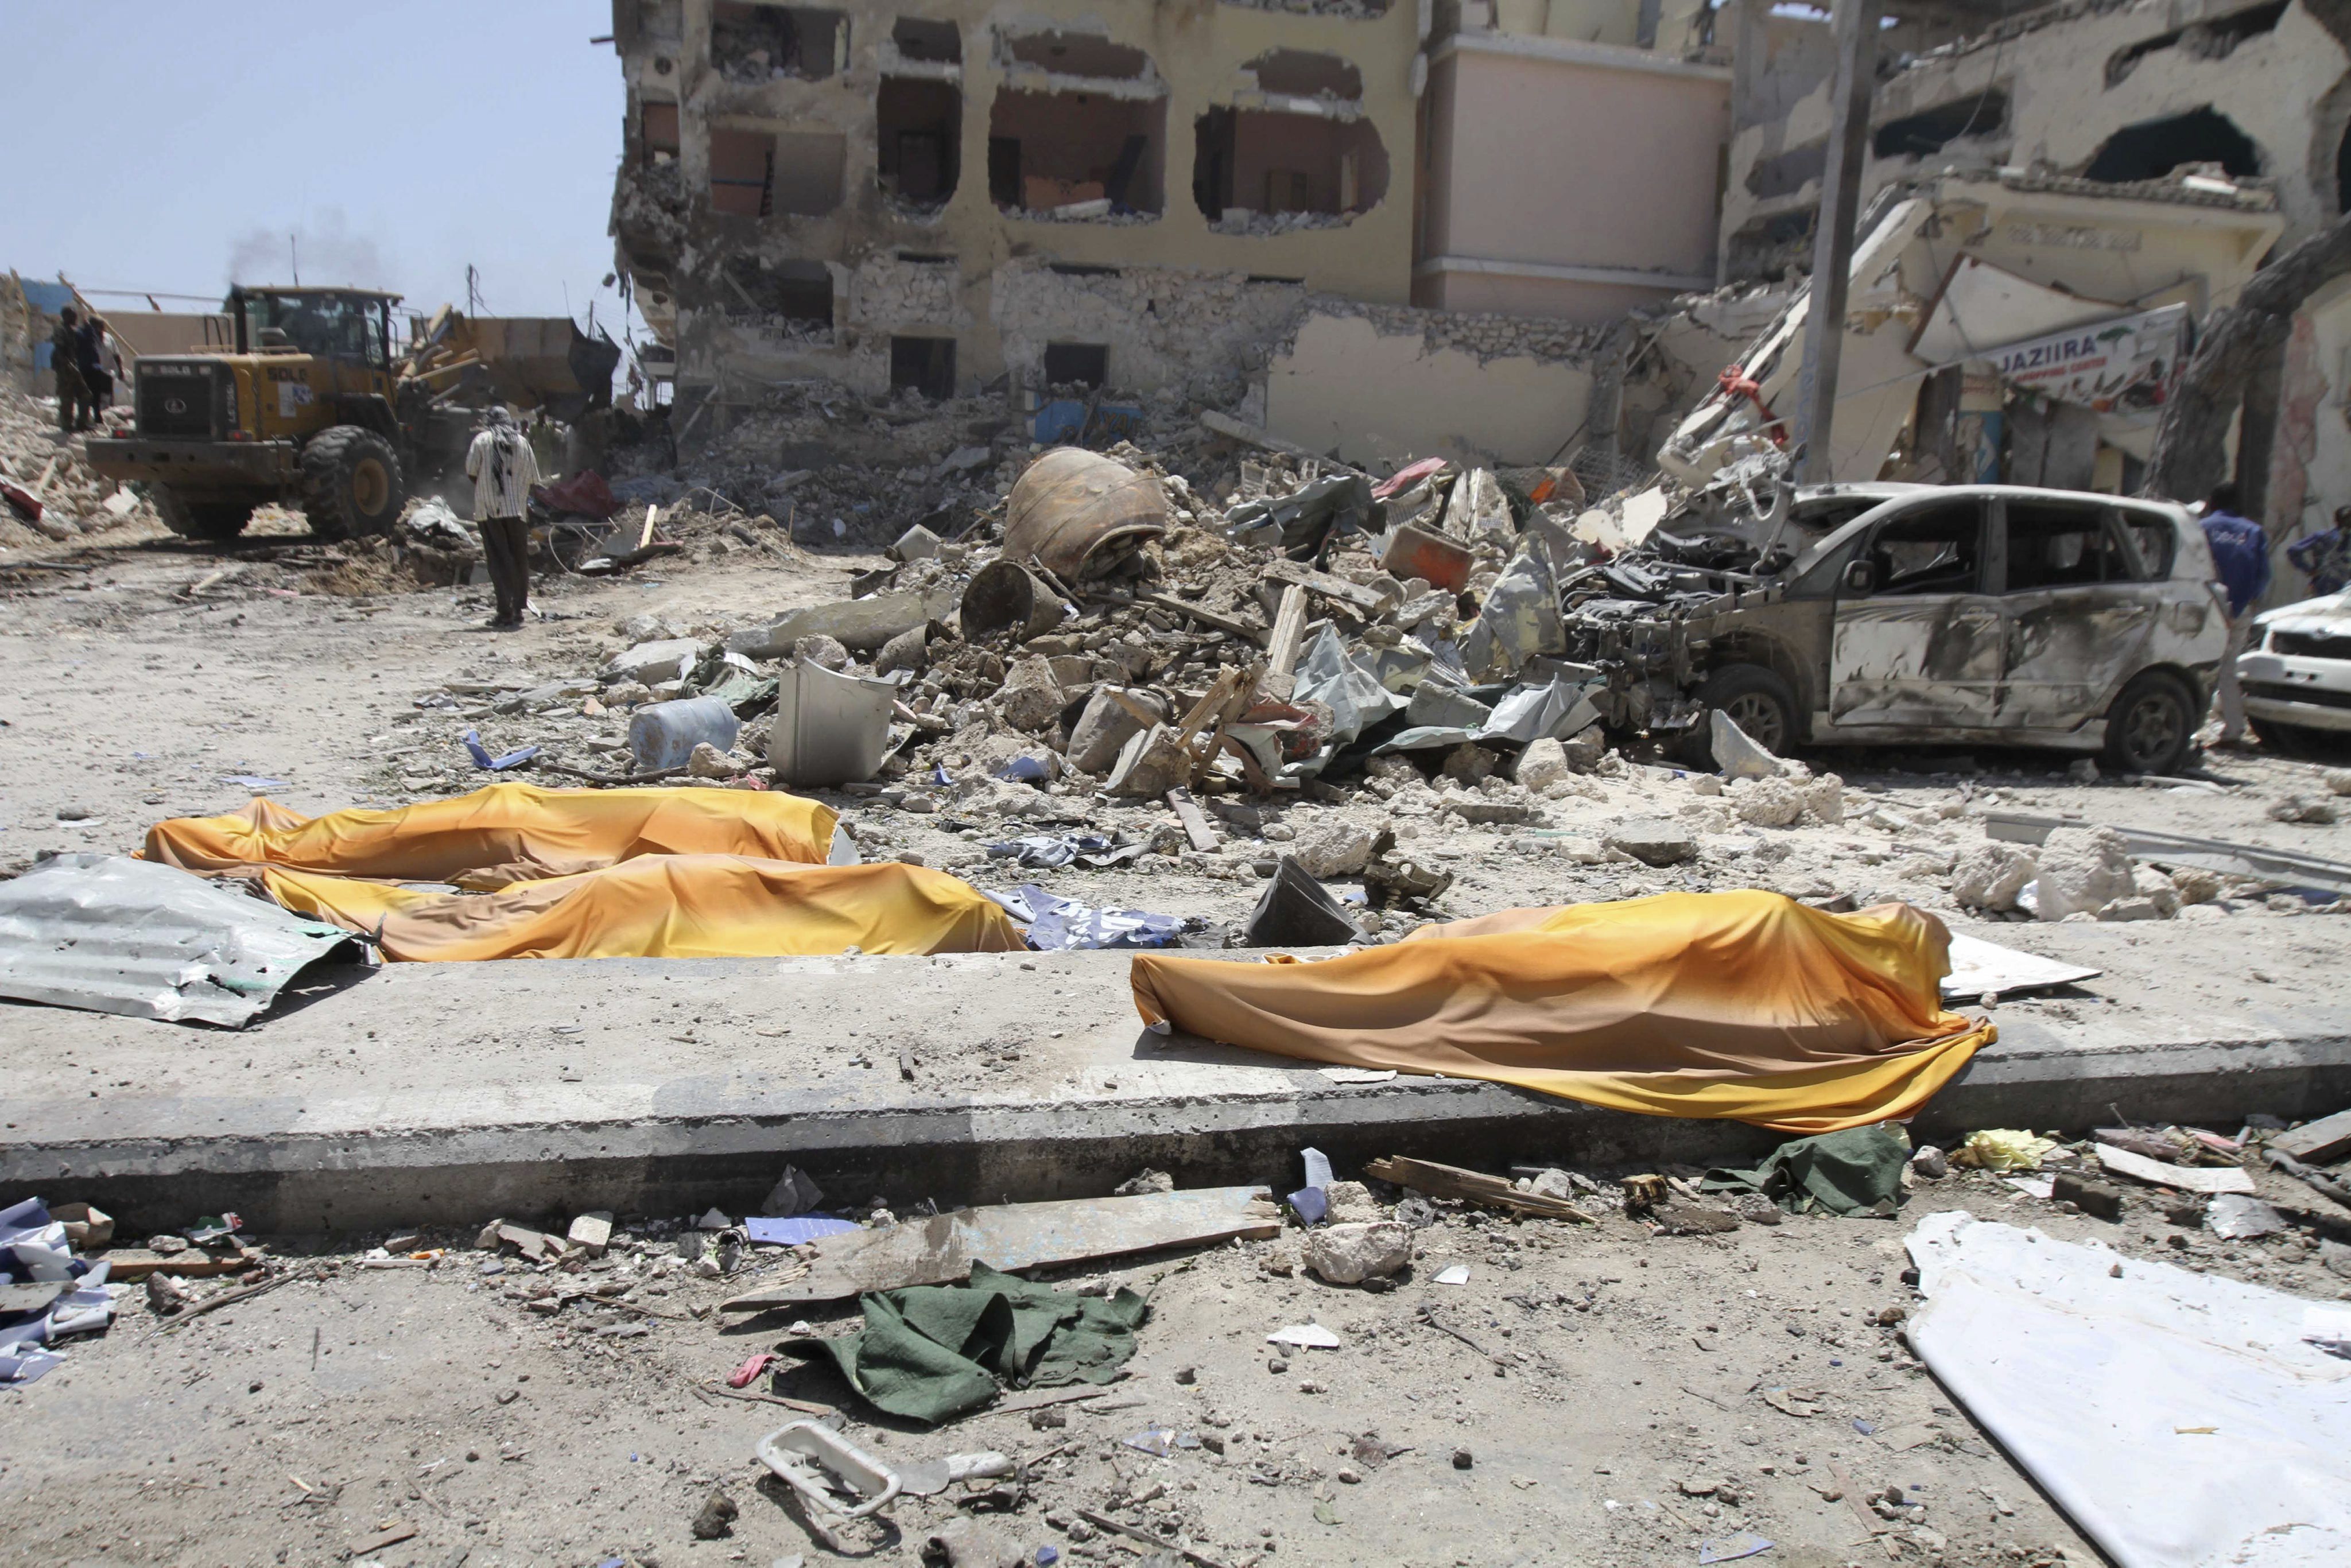  Al menos 22 personas mueren en Somalia por ataque terrorista